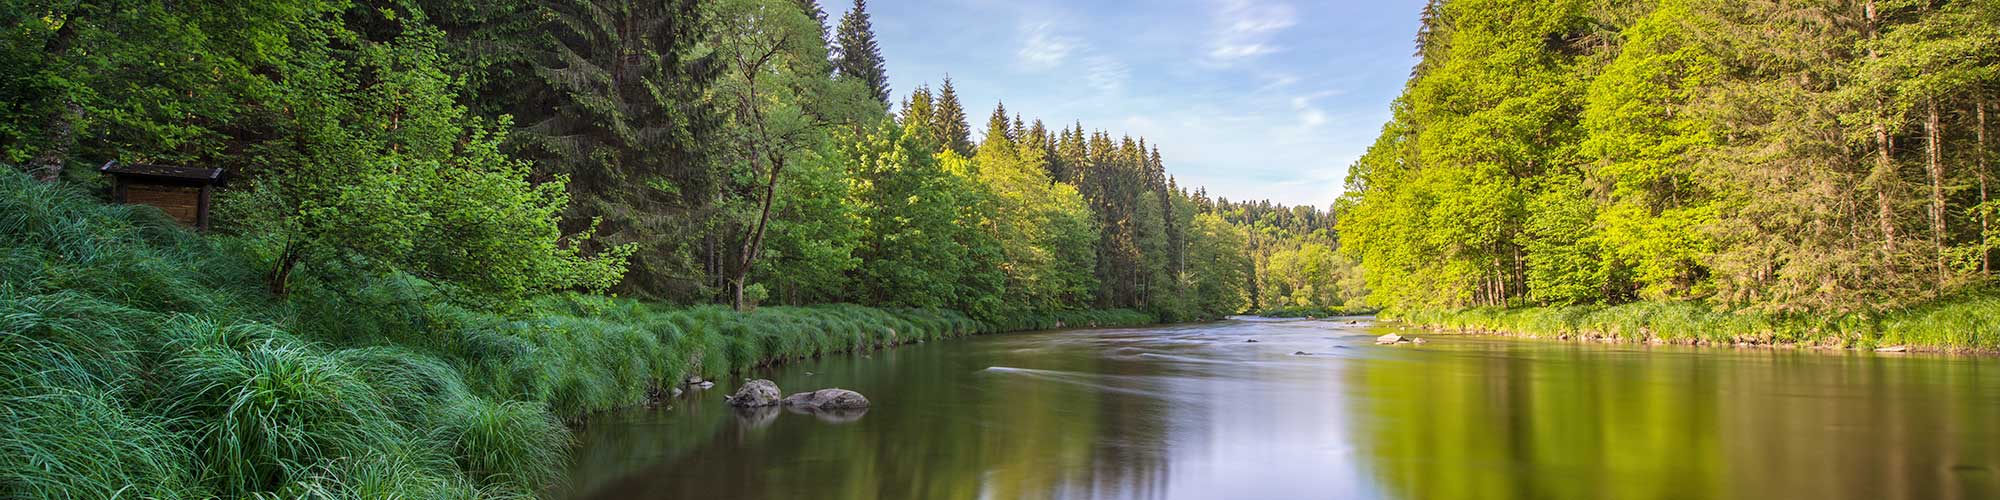 Blick auf den Fluss Ilz eingebettet in grüne Mischwälder